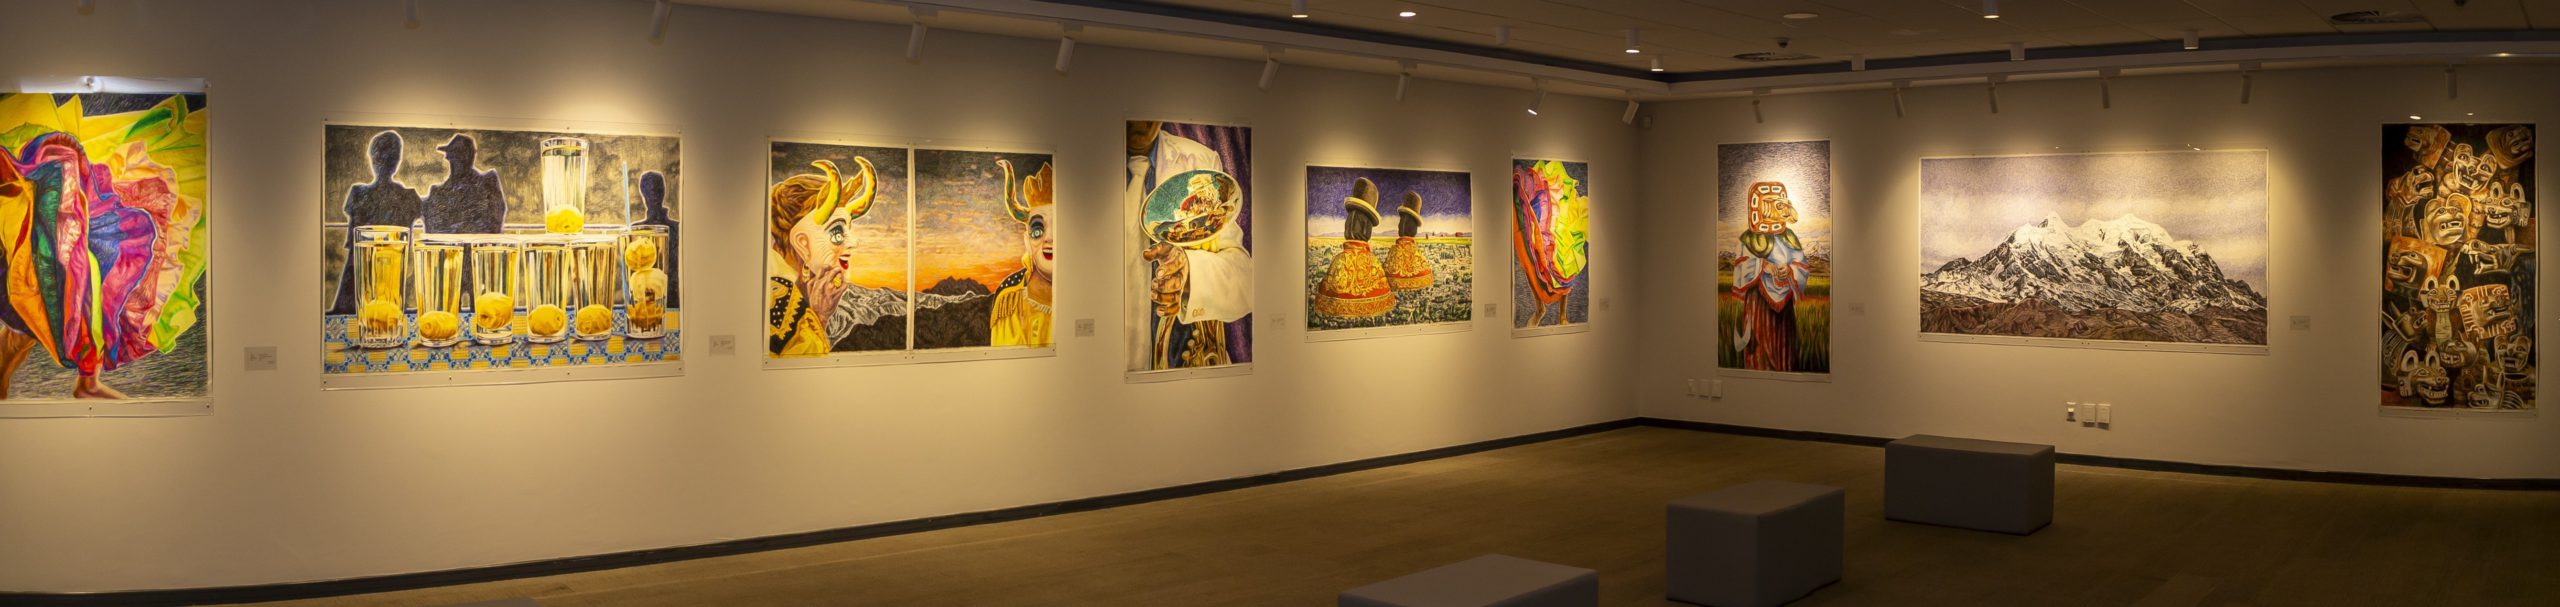 BNB Art expone “Glissando Trazos”, la colorida y festiva colección de la artista Guiomar Mesa